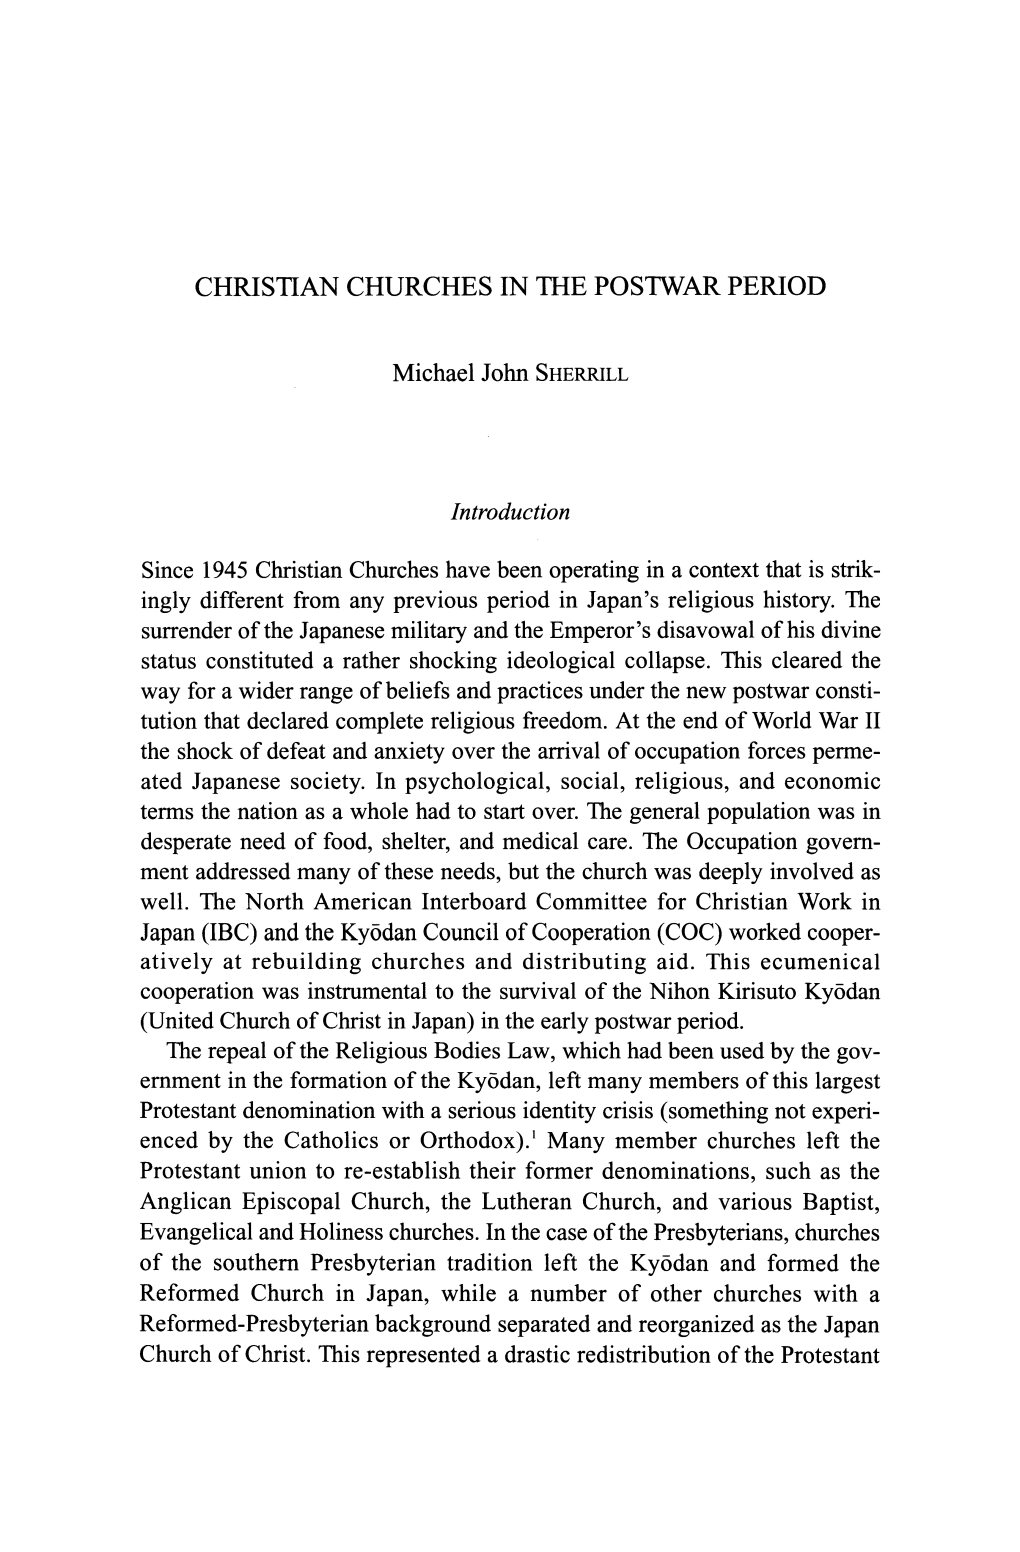 Christian Churches in the Postwar Period